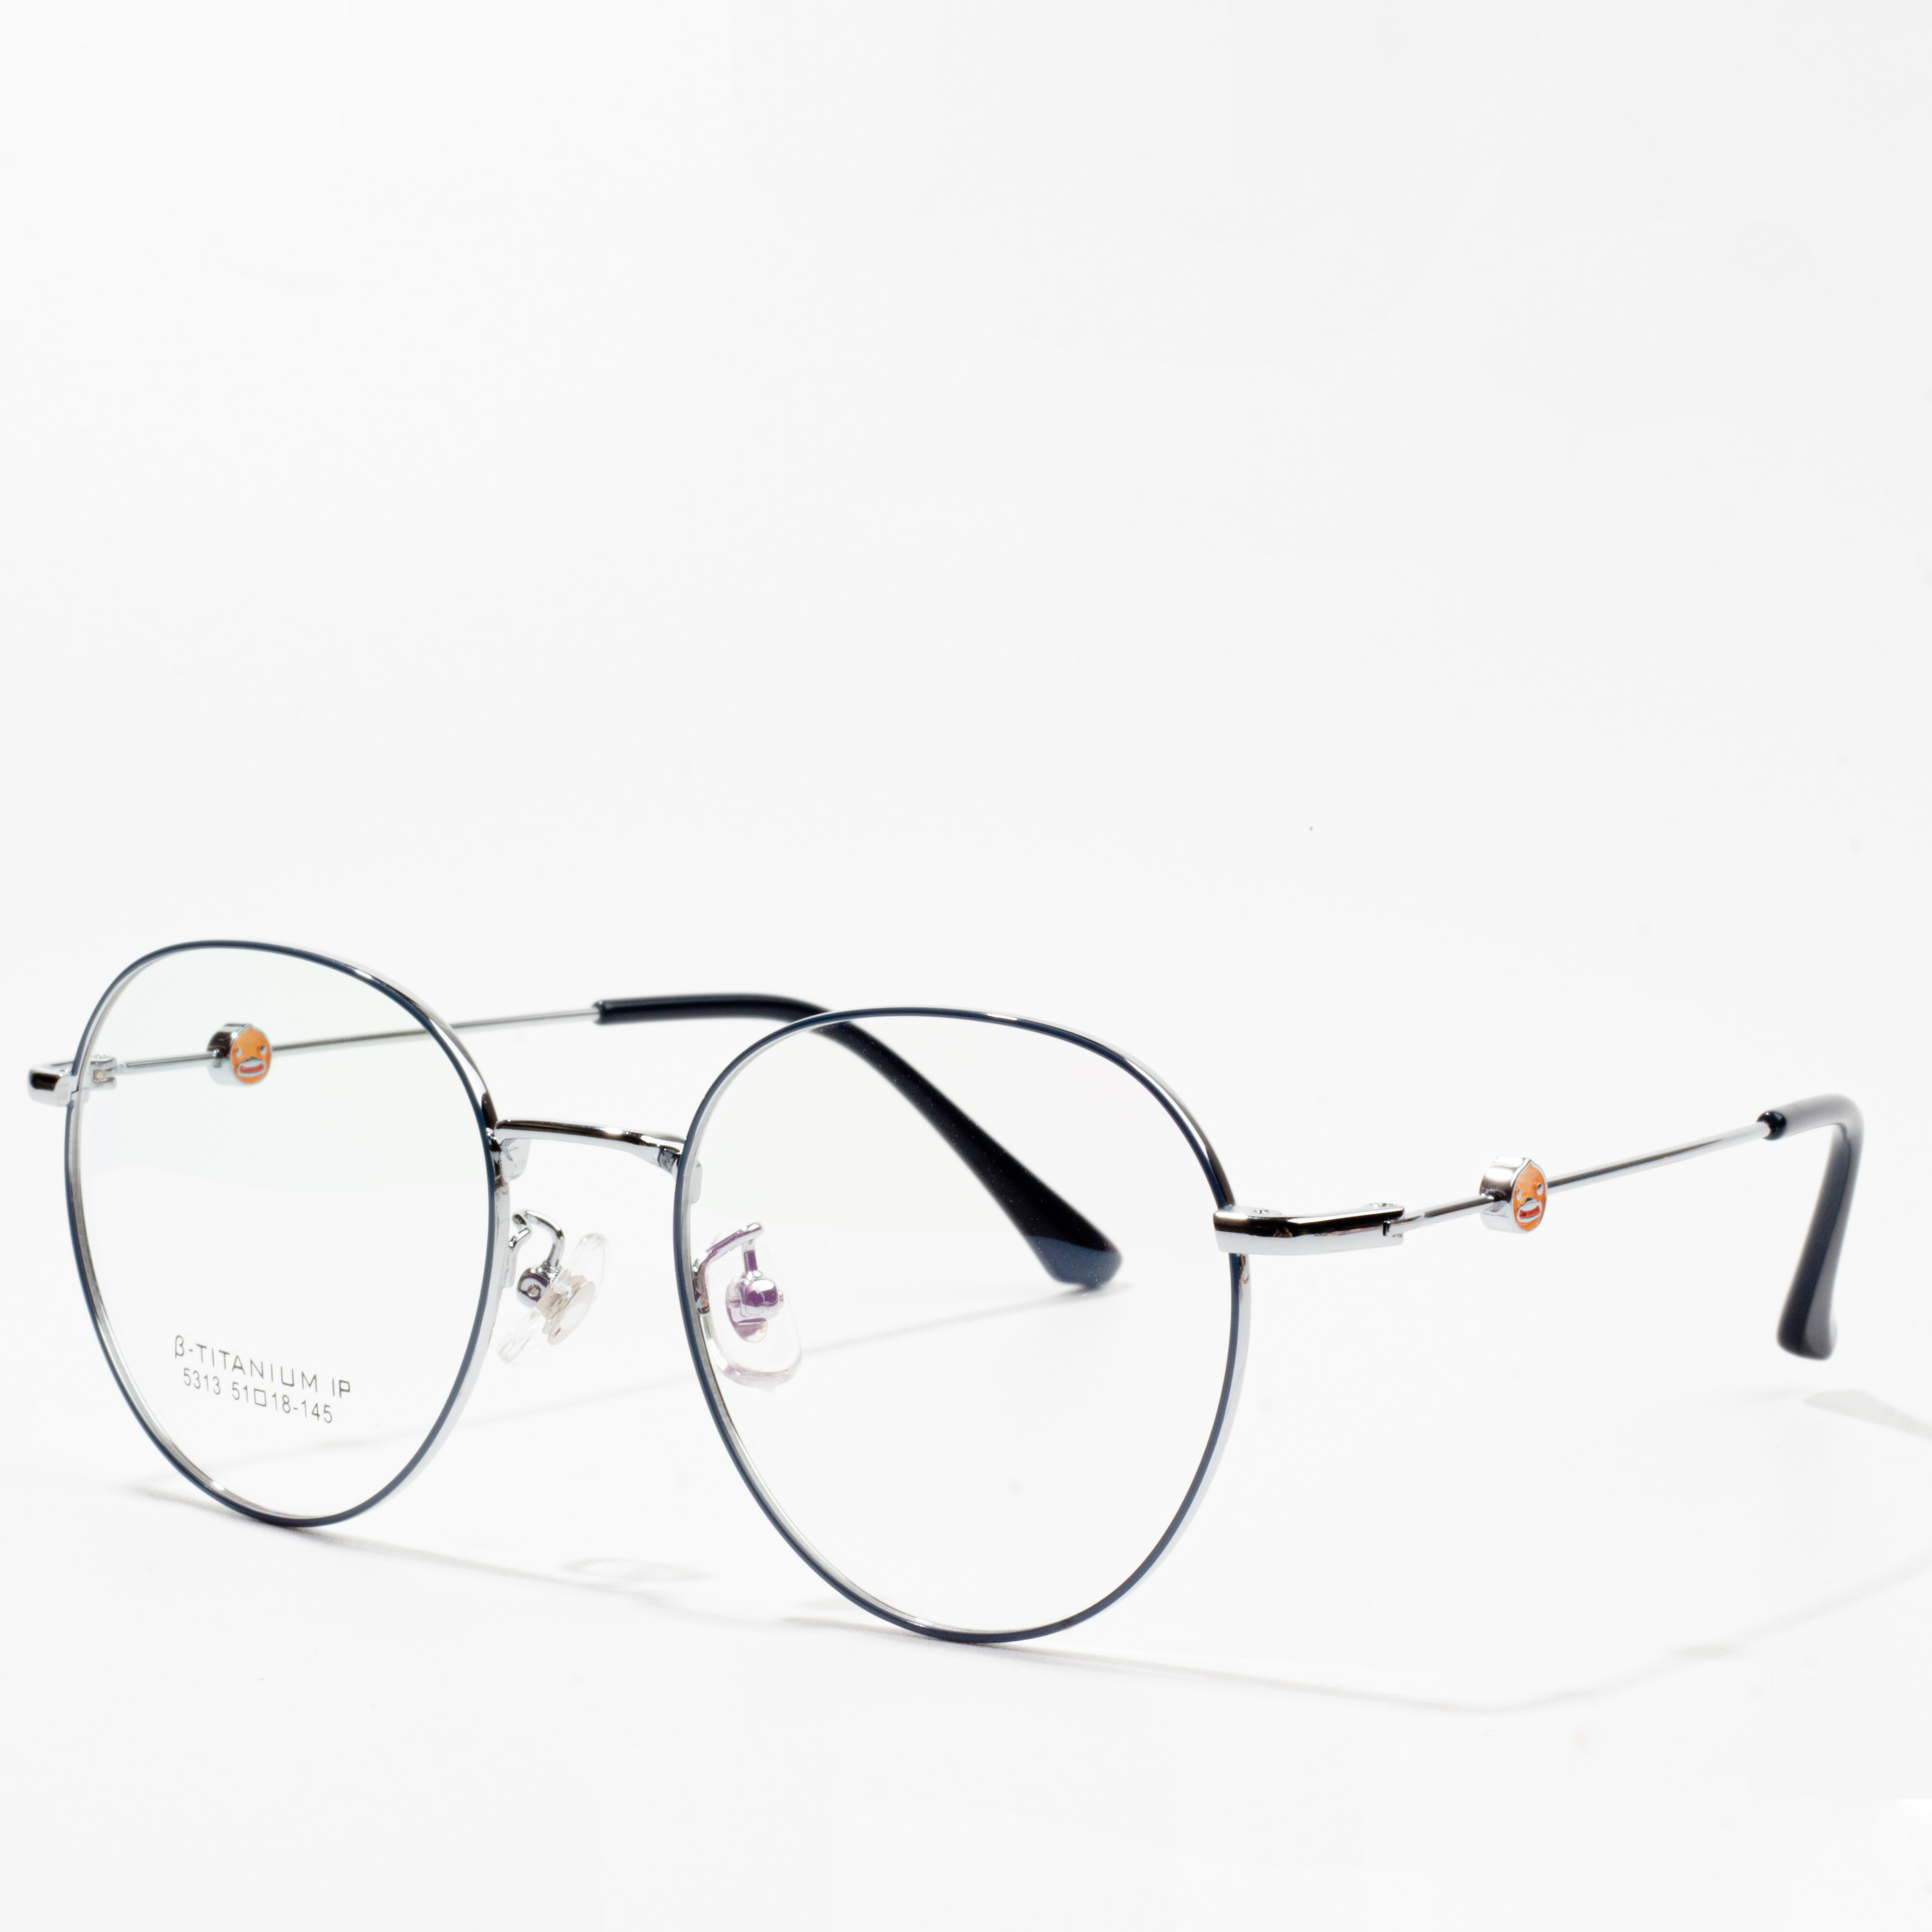 képek a szemüvegkeretekről